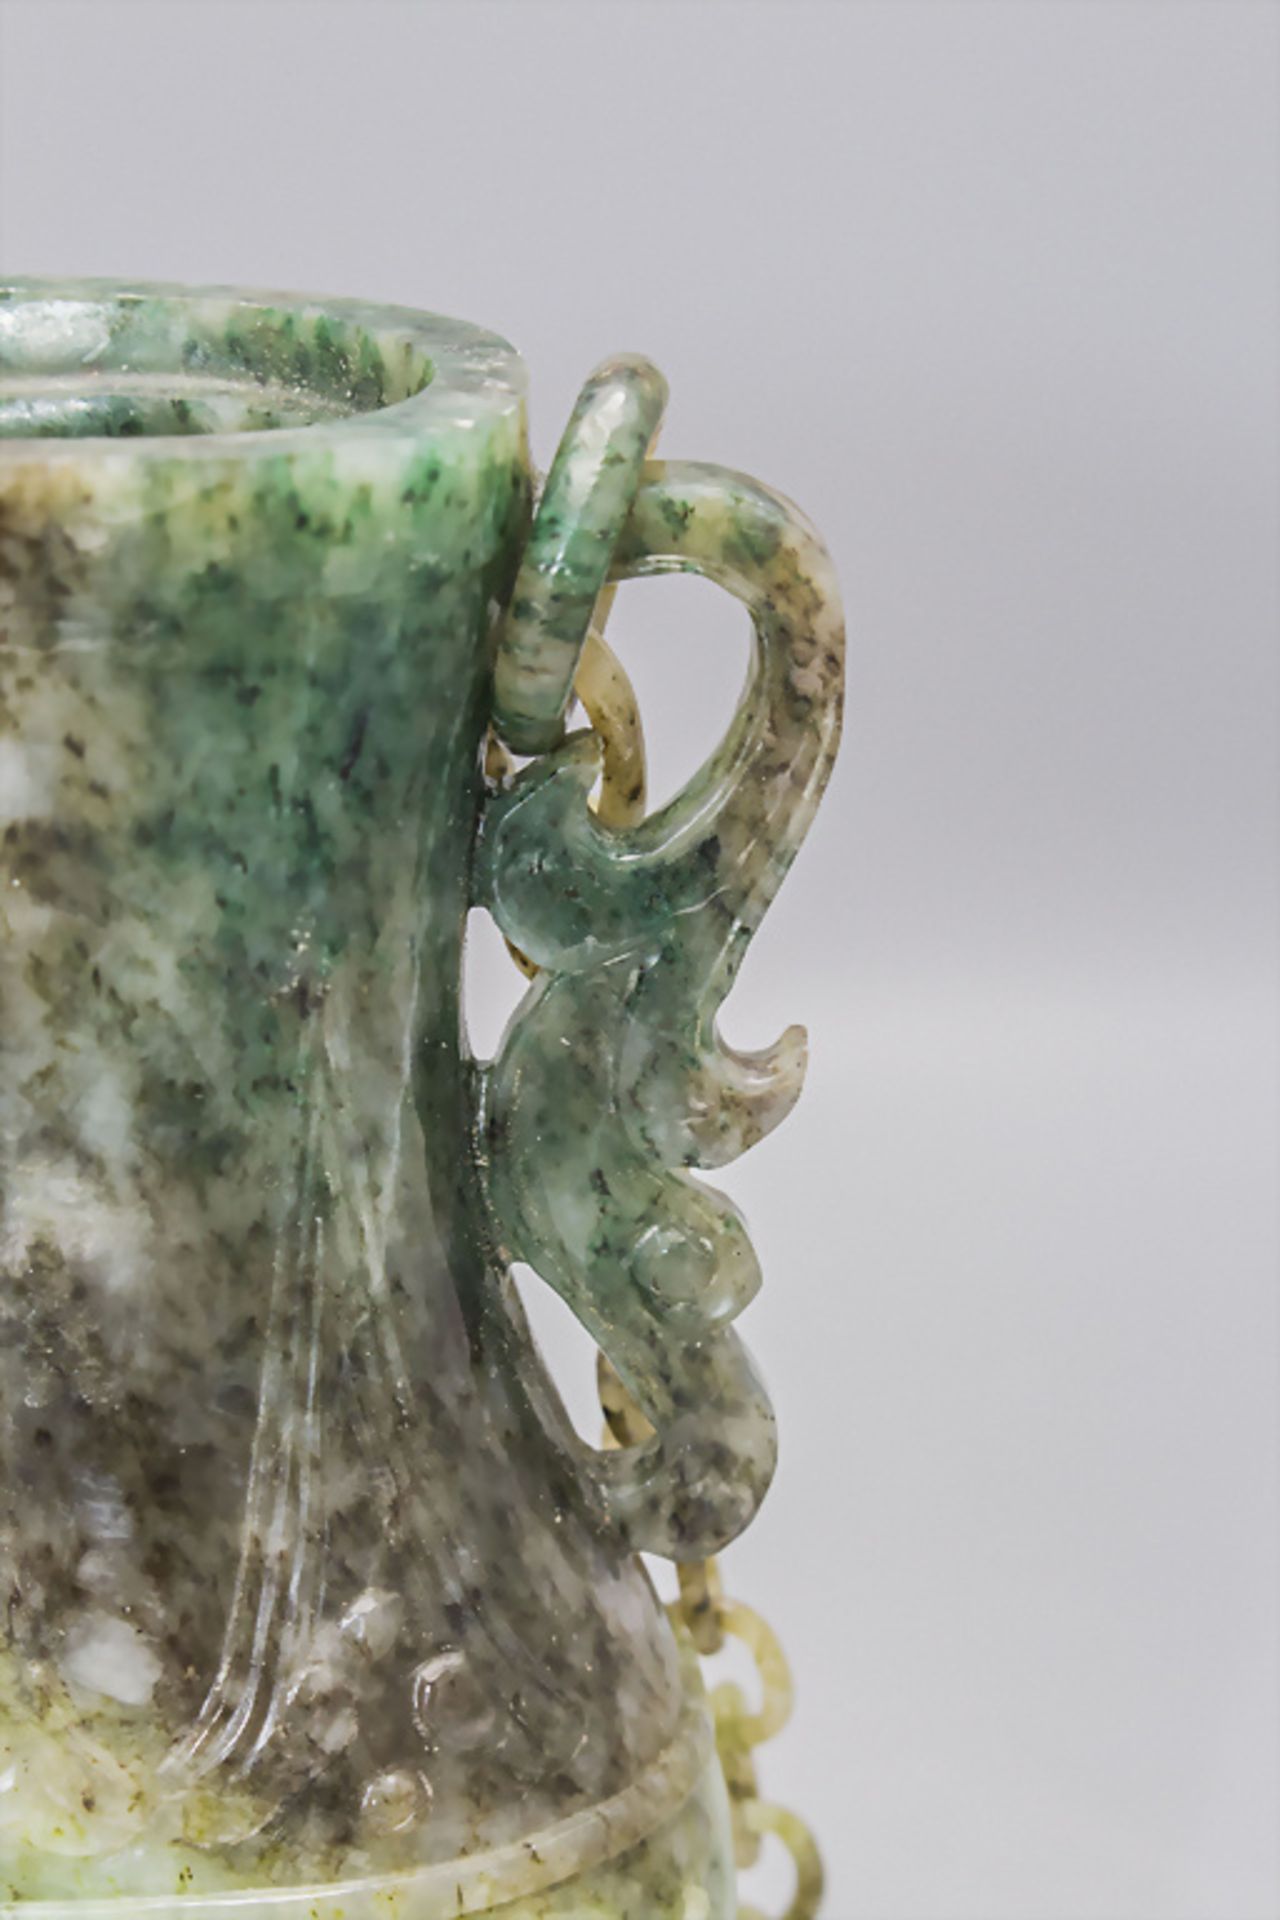 Feine Jade-Deckelvase an Hängekette / A fine jade lidded vase on a chain, China, um 1920 - Bild 6 aus 10